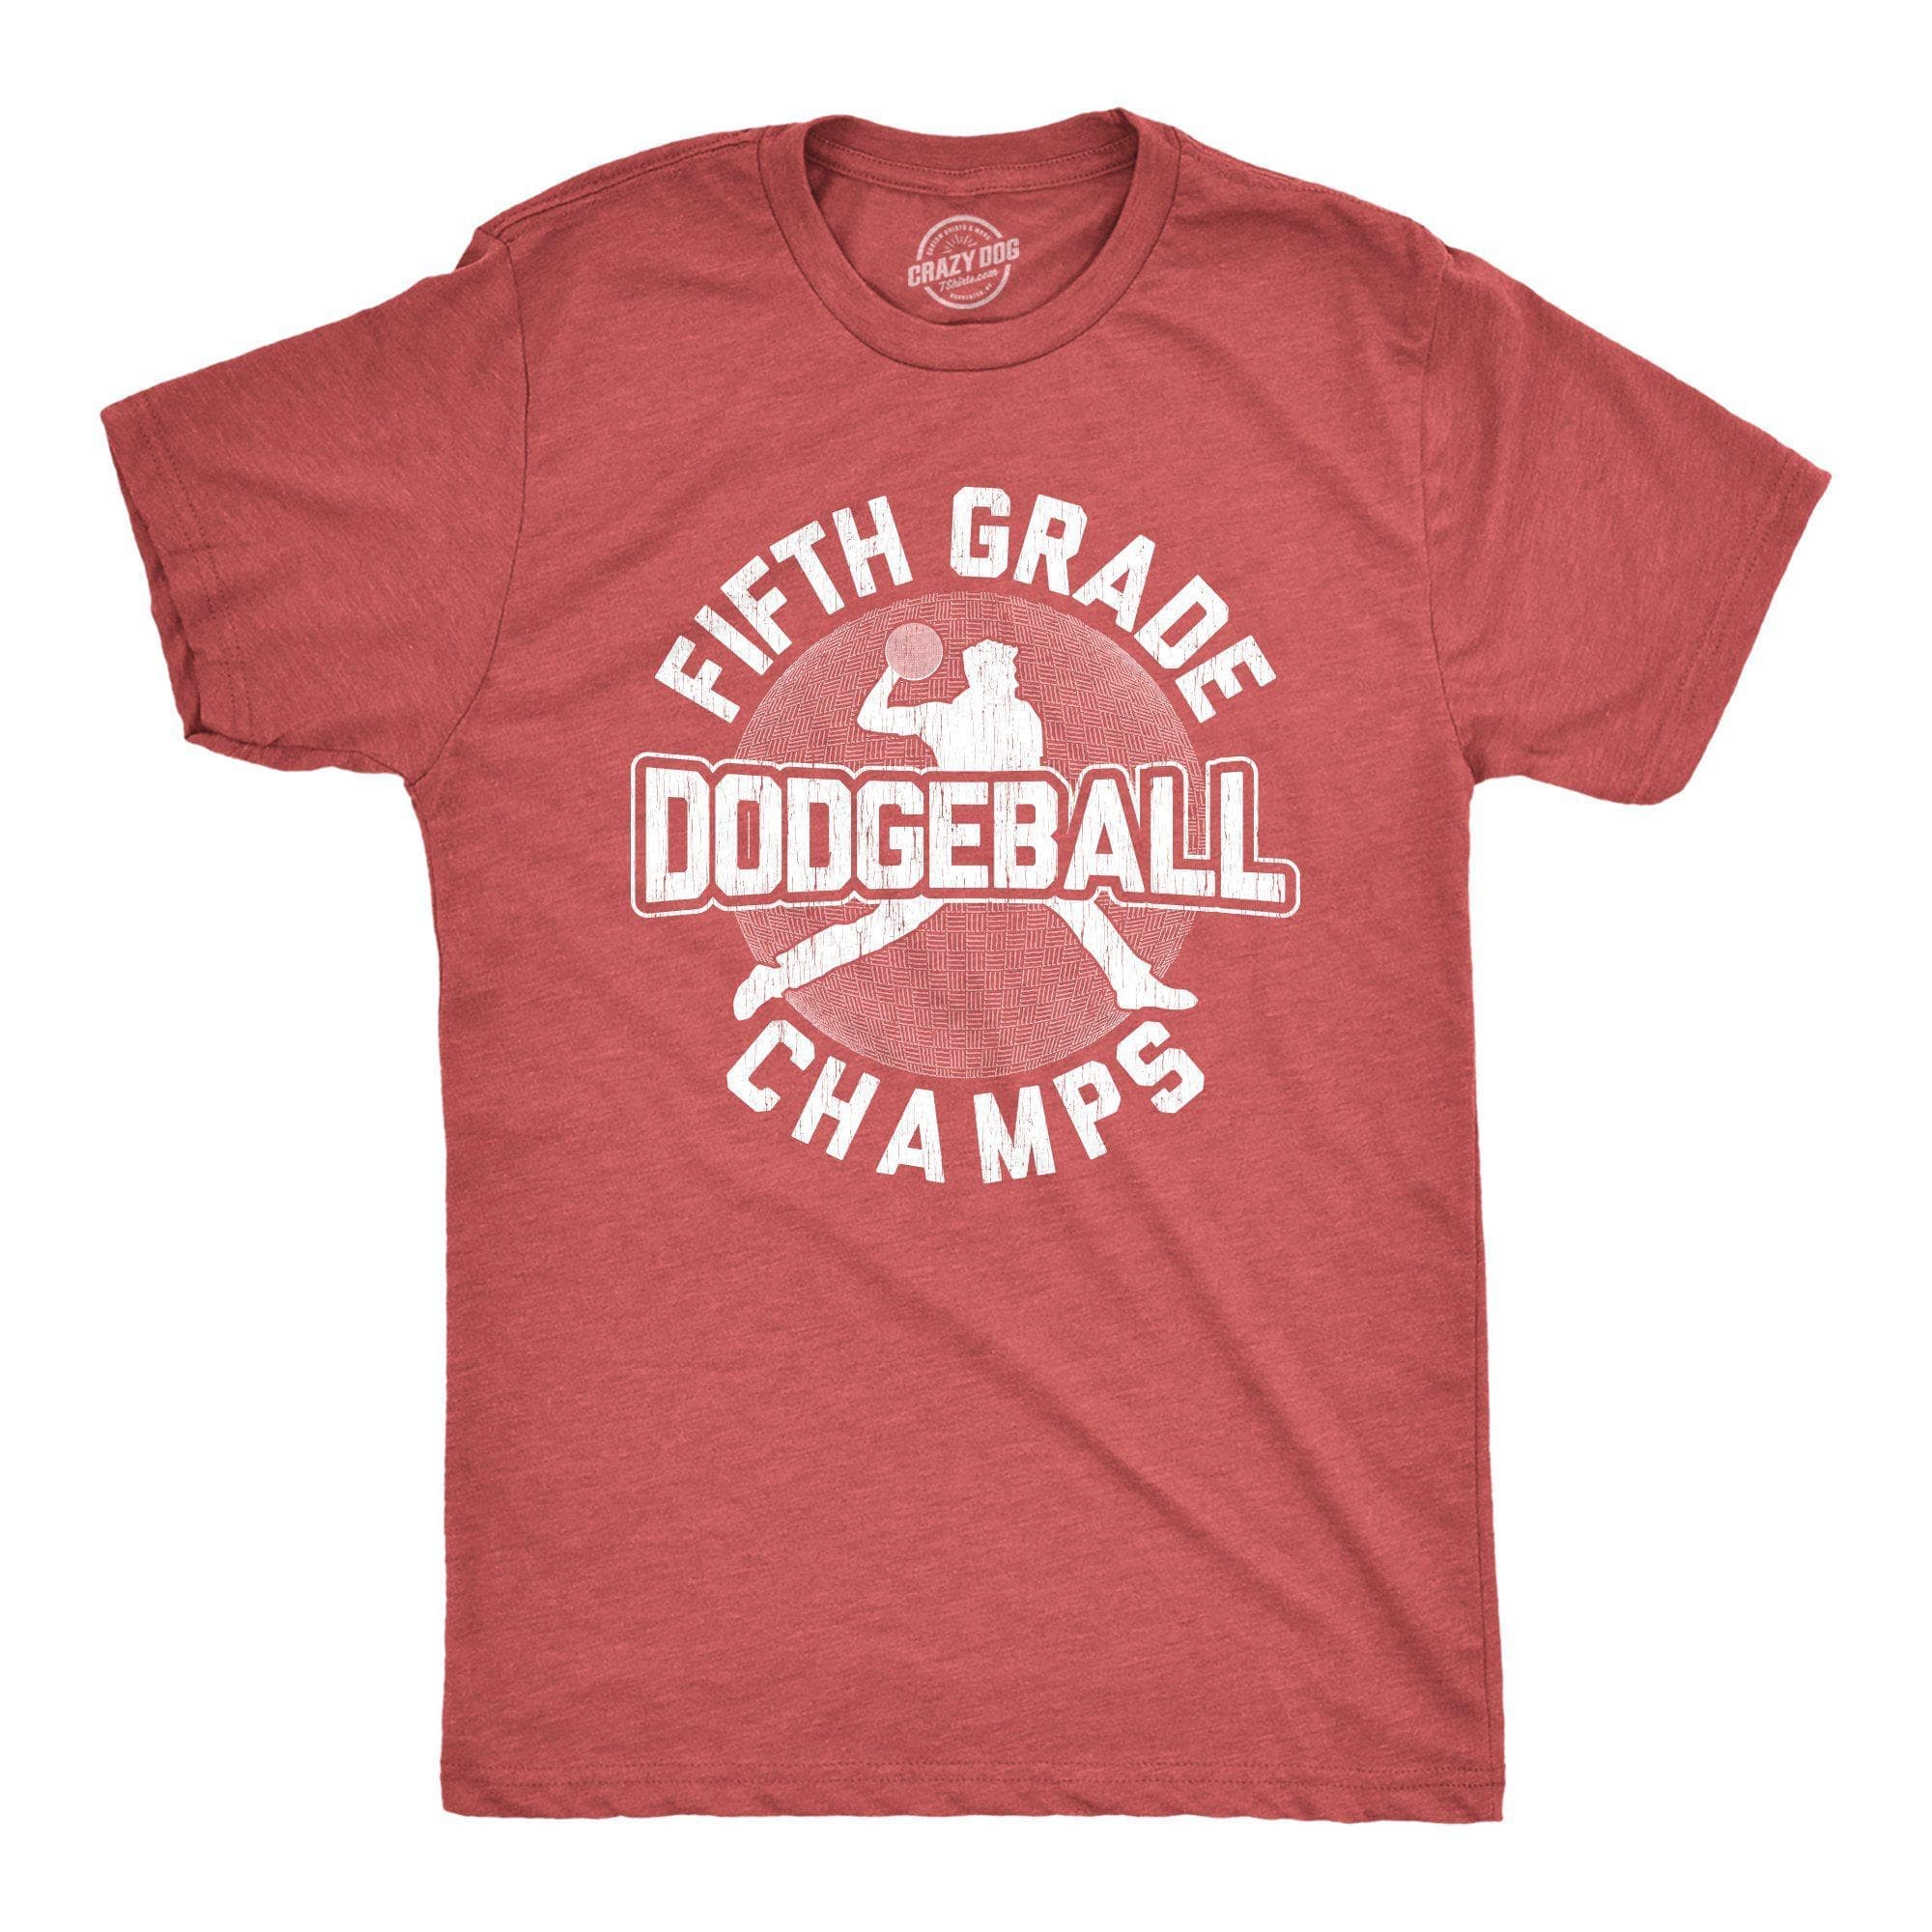 Fifth Grade Dodgeball Champs Men's Tshirt  -  Crazy Dog T-Shirts